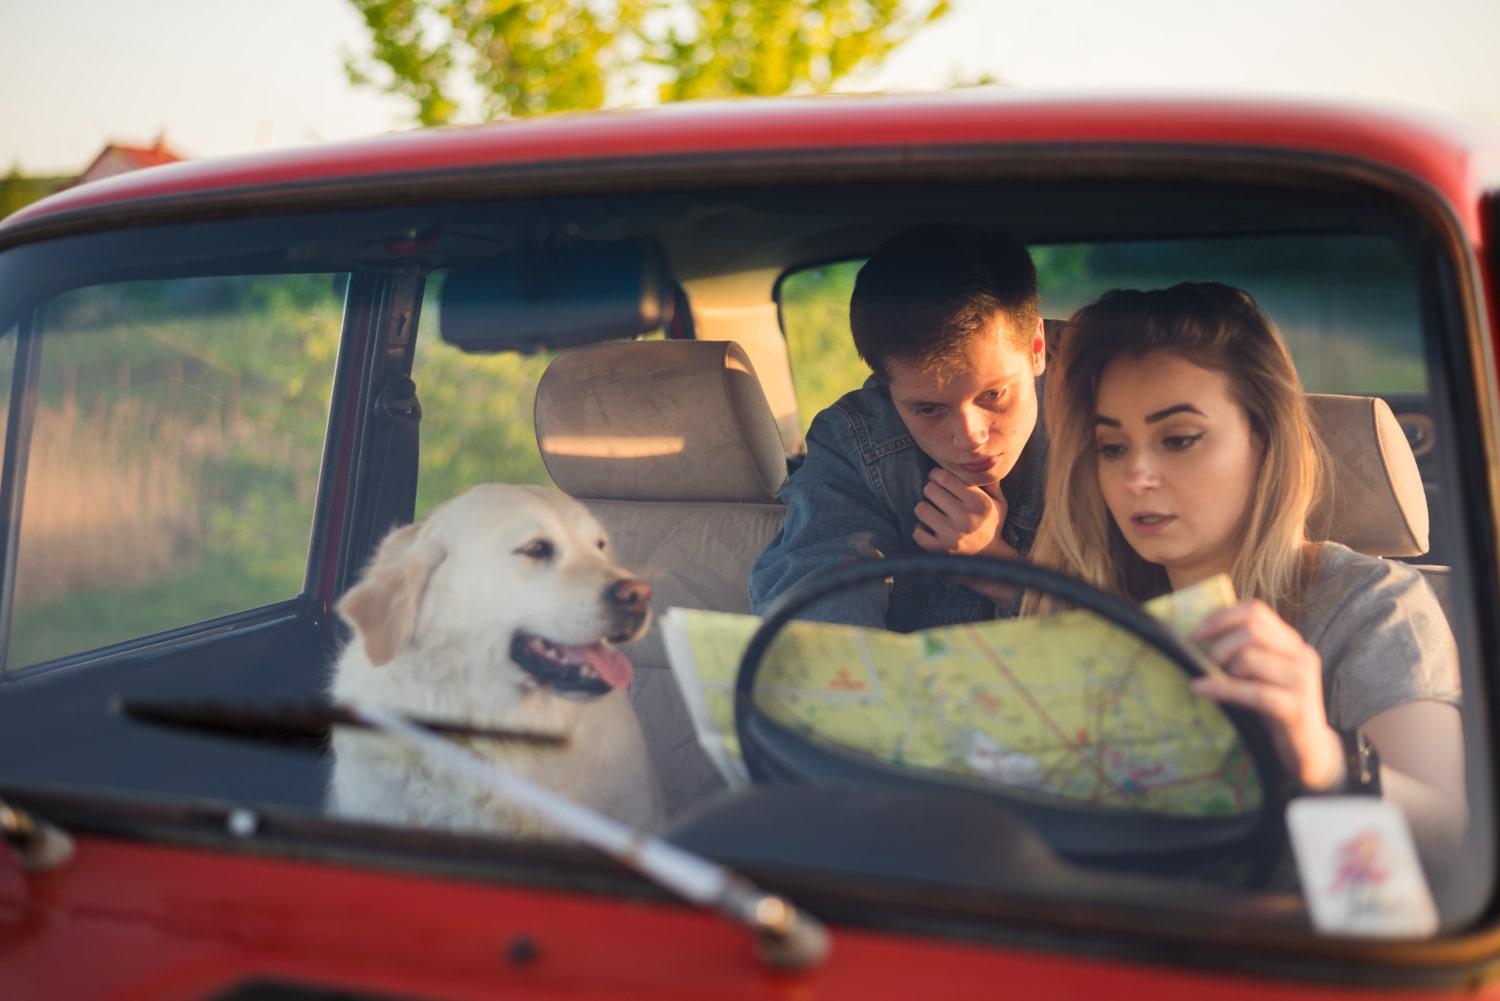 Duas pessoas e um cachorro dentro de um carro. A mulher, que está no volante, segura um mapa, enquanto o homem, que está no banco de trás, aponta para o mapa.